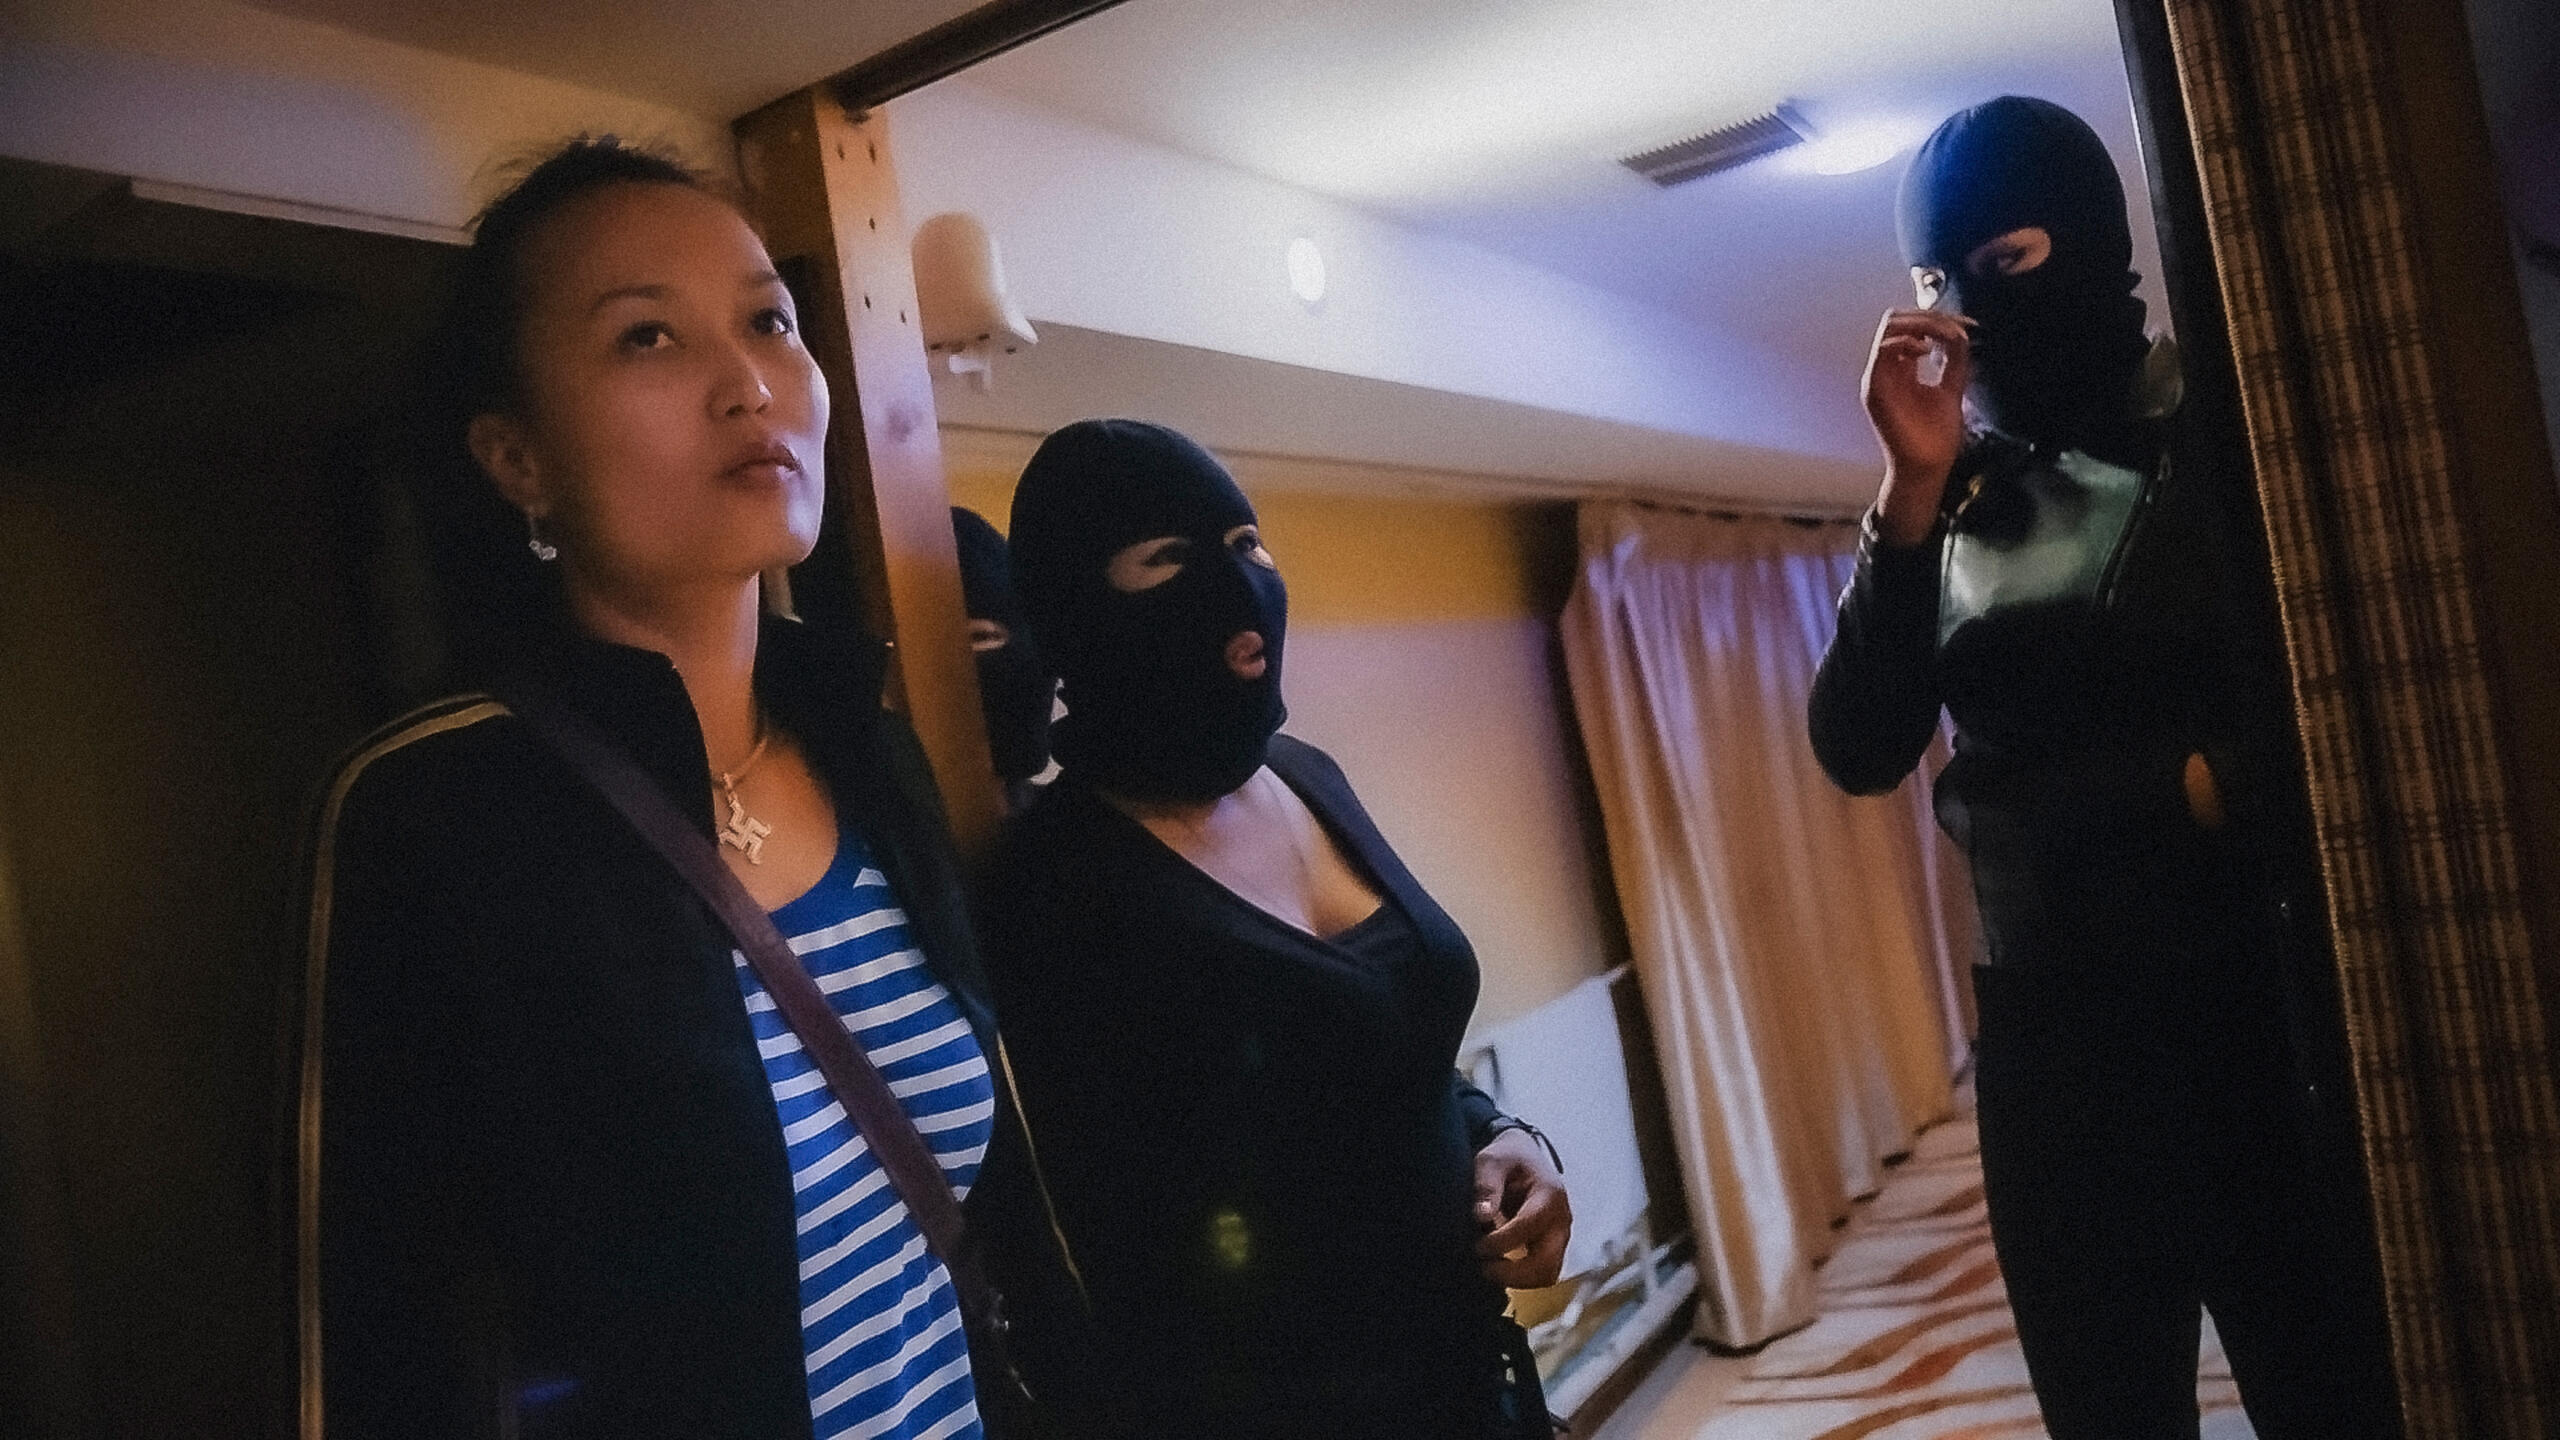 Eine Frau in einem Streifenshirt und einer Trainingsjacke steht mit zwei vermummten Frauen in einem Hotelzimmer.